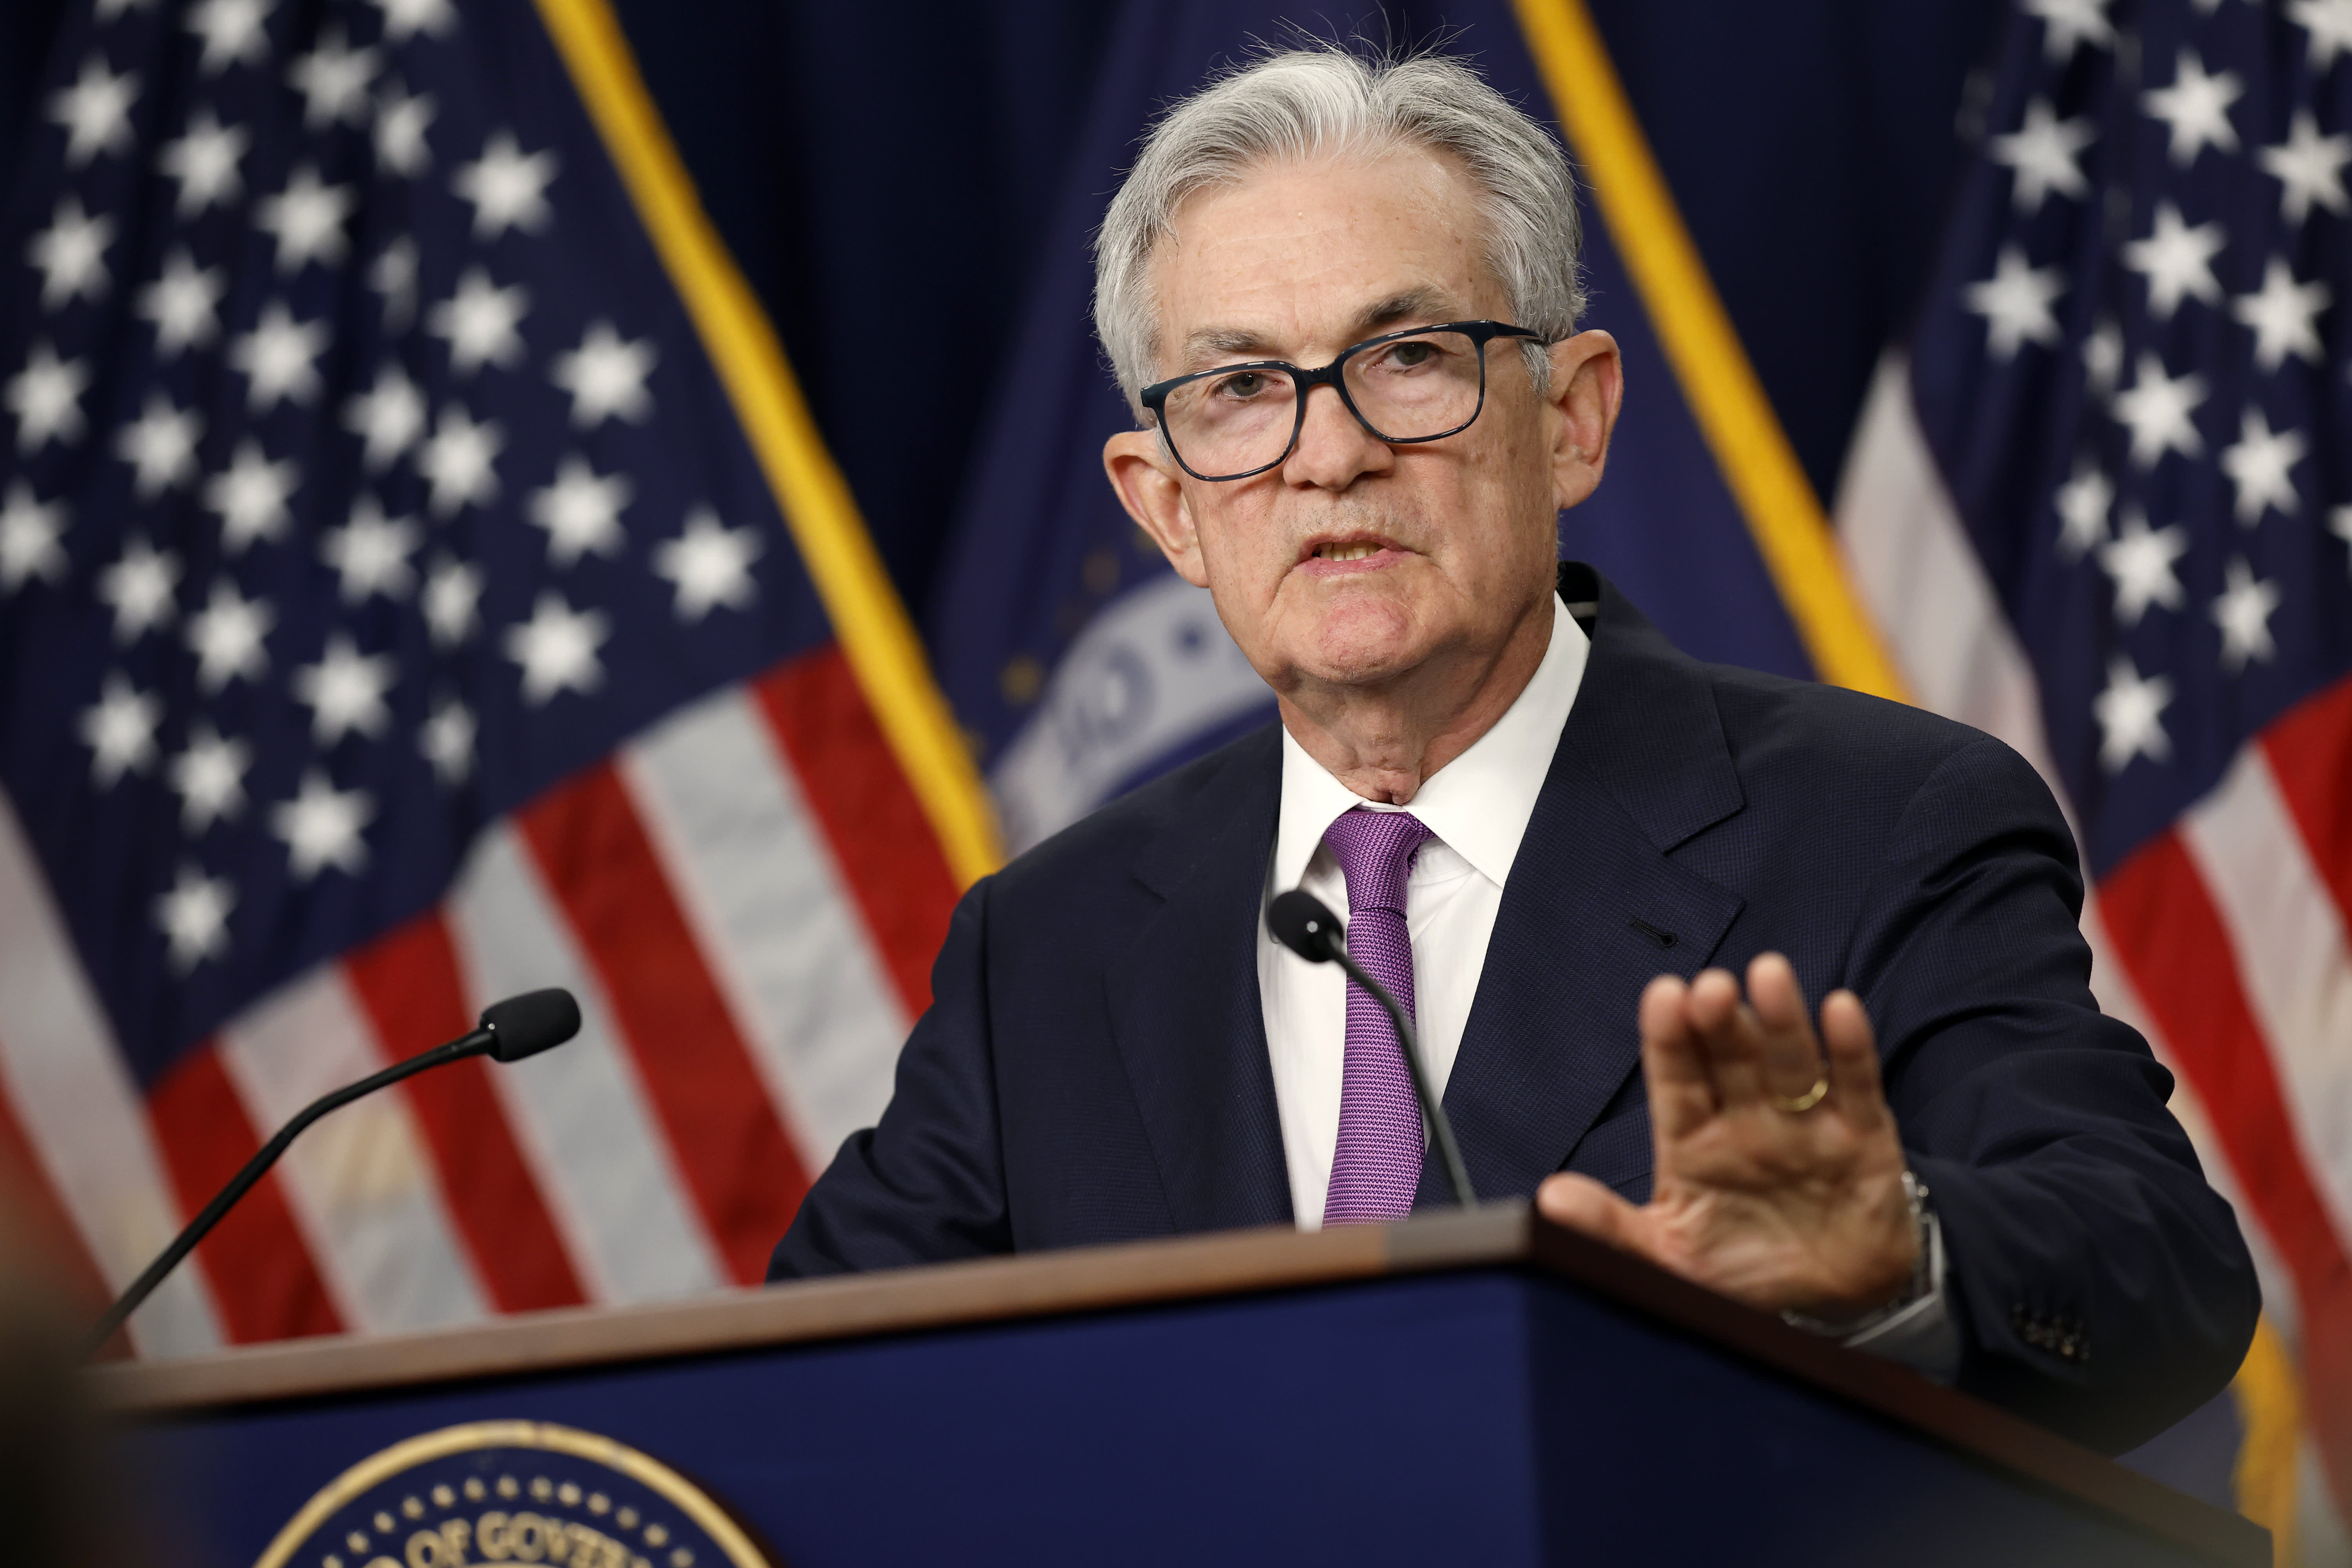 Der Vorsitzende der Fed, Powell, bezeichnet die Diskussion über Zinssenkungen als „verfrüht“ und sagt, dass es zu weiteren Zinserhöhungen kommen könnte